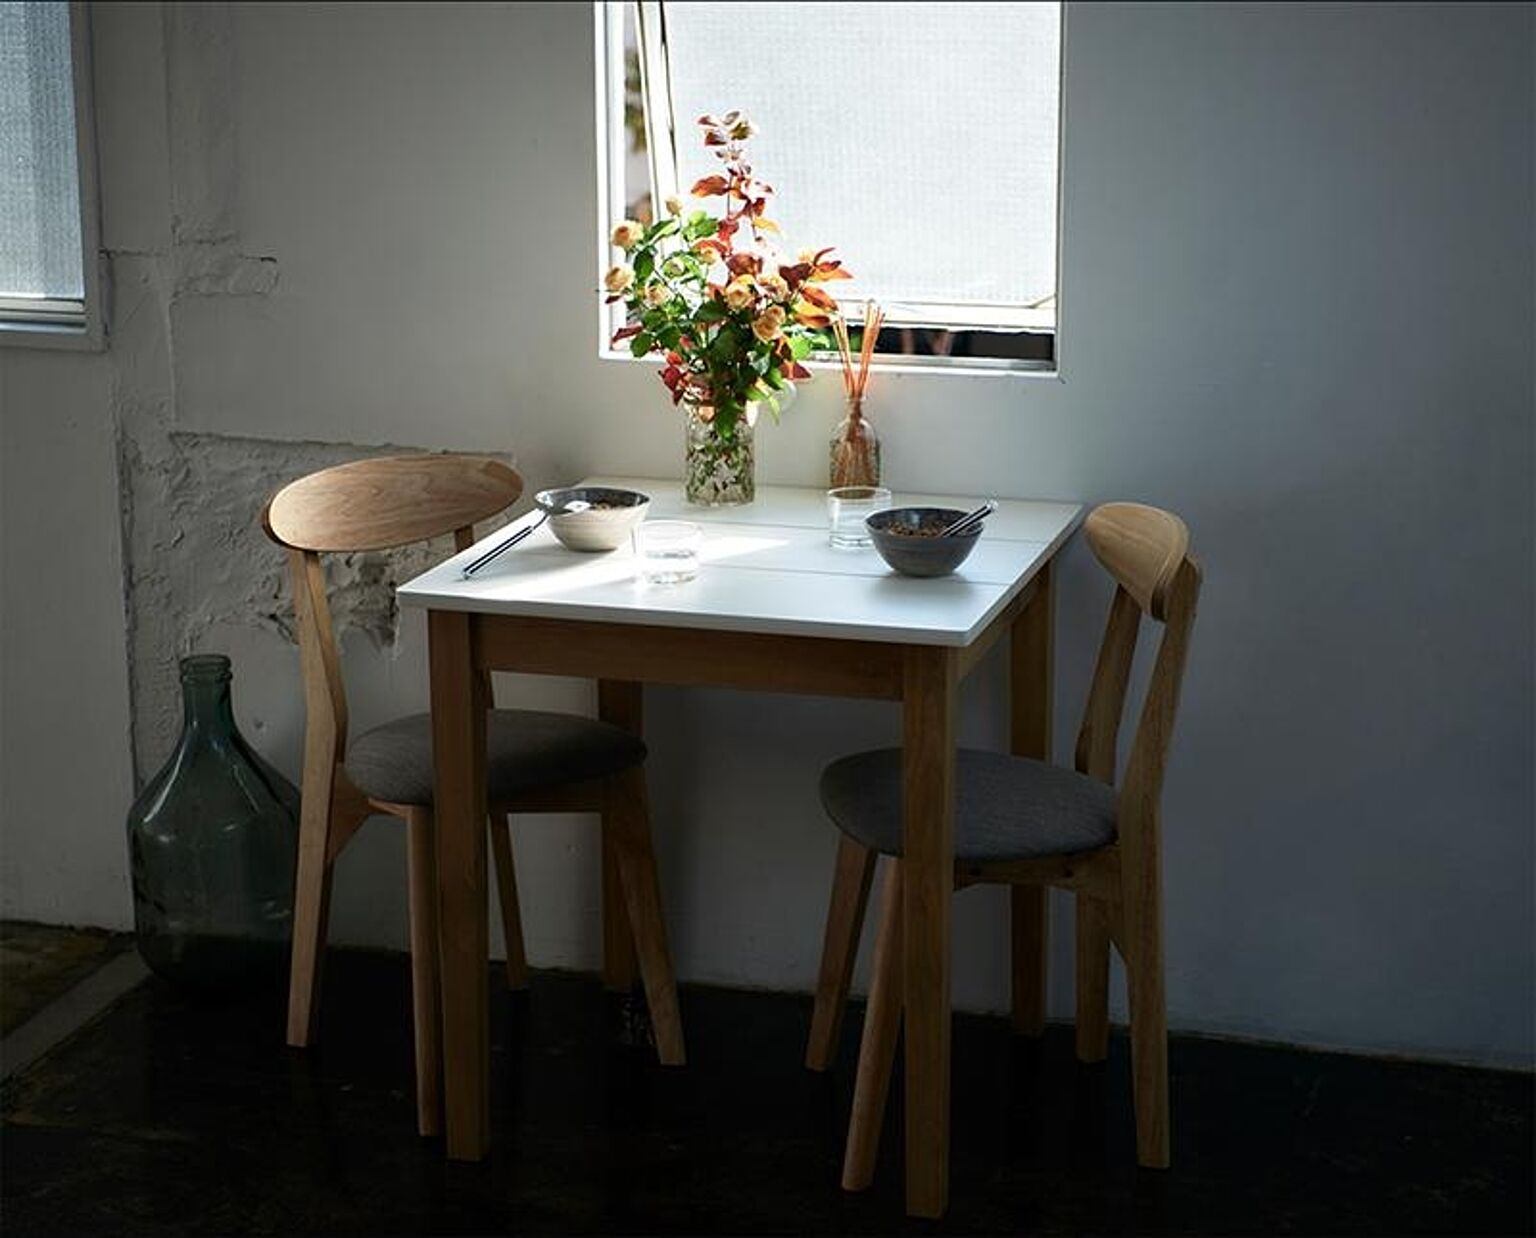  幅68cm スクエアサイズのコンパクトダイニング FAIRBANX フェアバンクス ダイニングテーブル ホワイト×ナチュラル W68 テーブル単品 テーブルのみ 68cm 食卓 リビング キッチン 